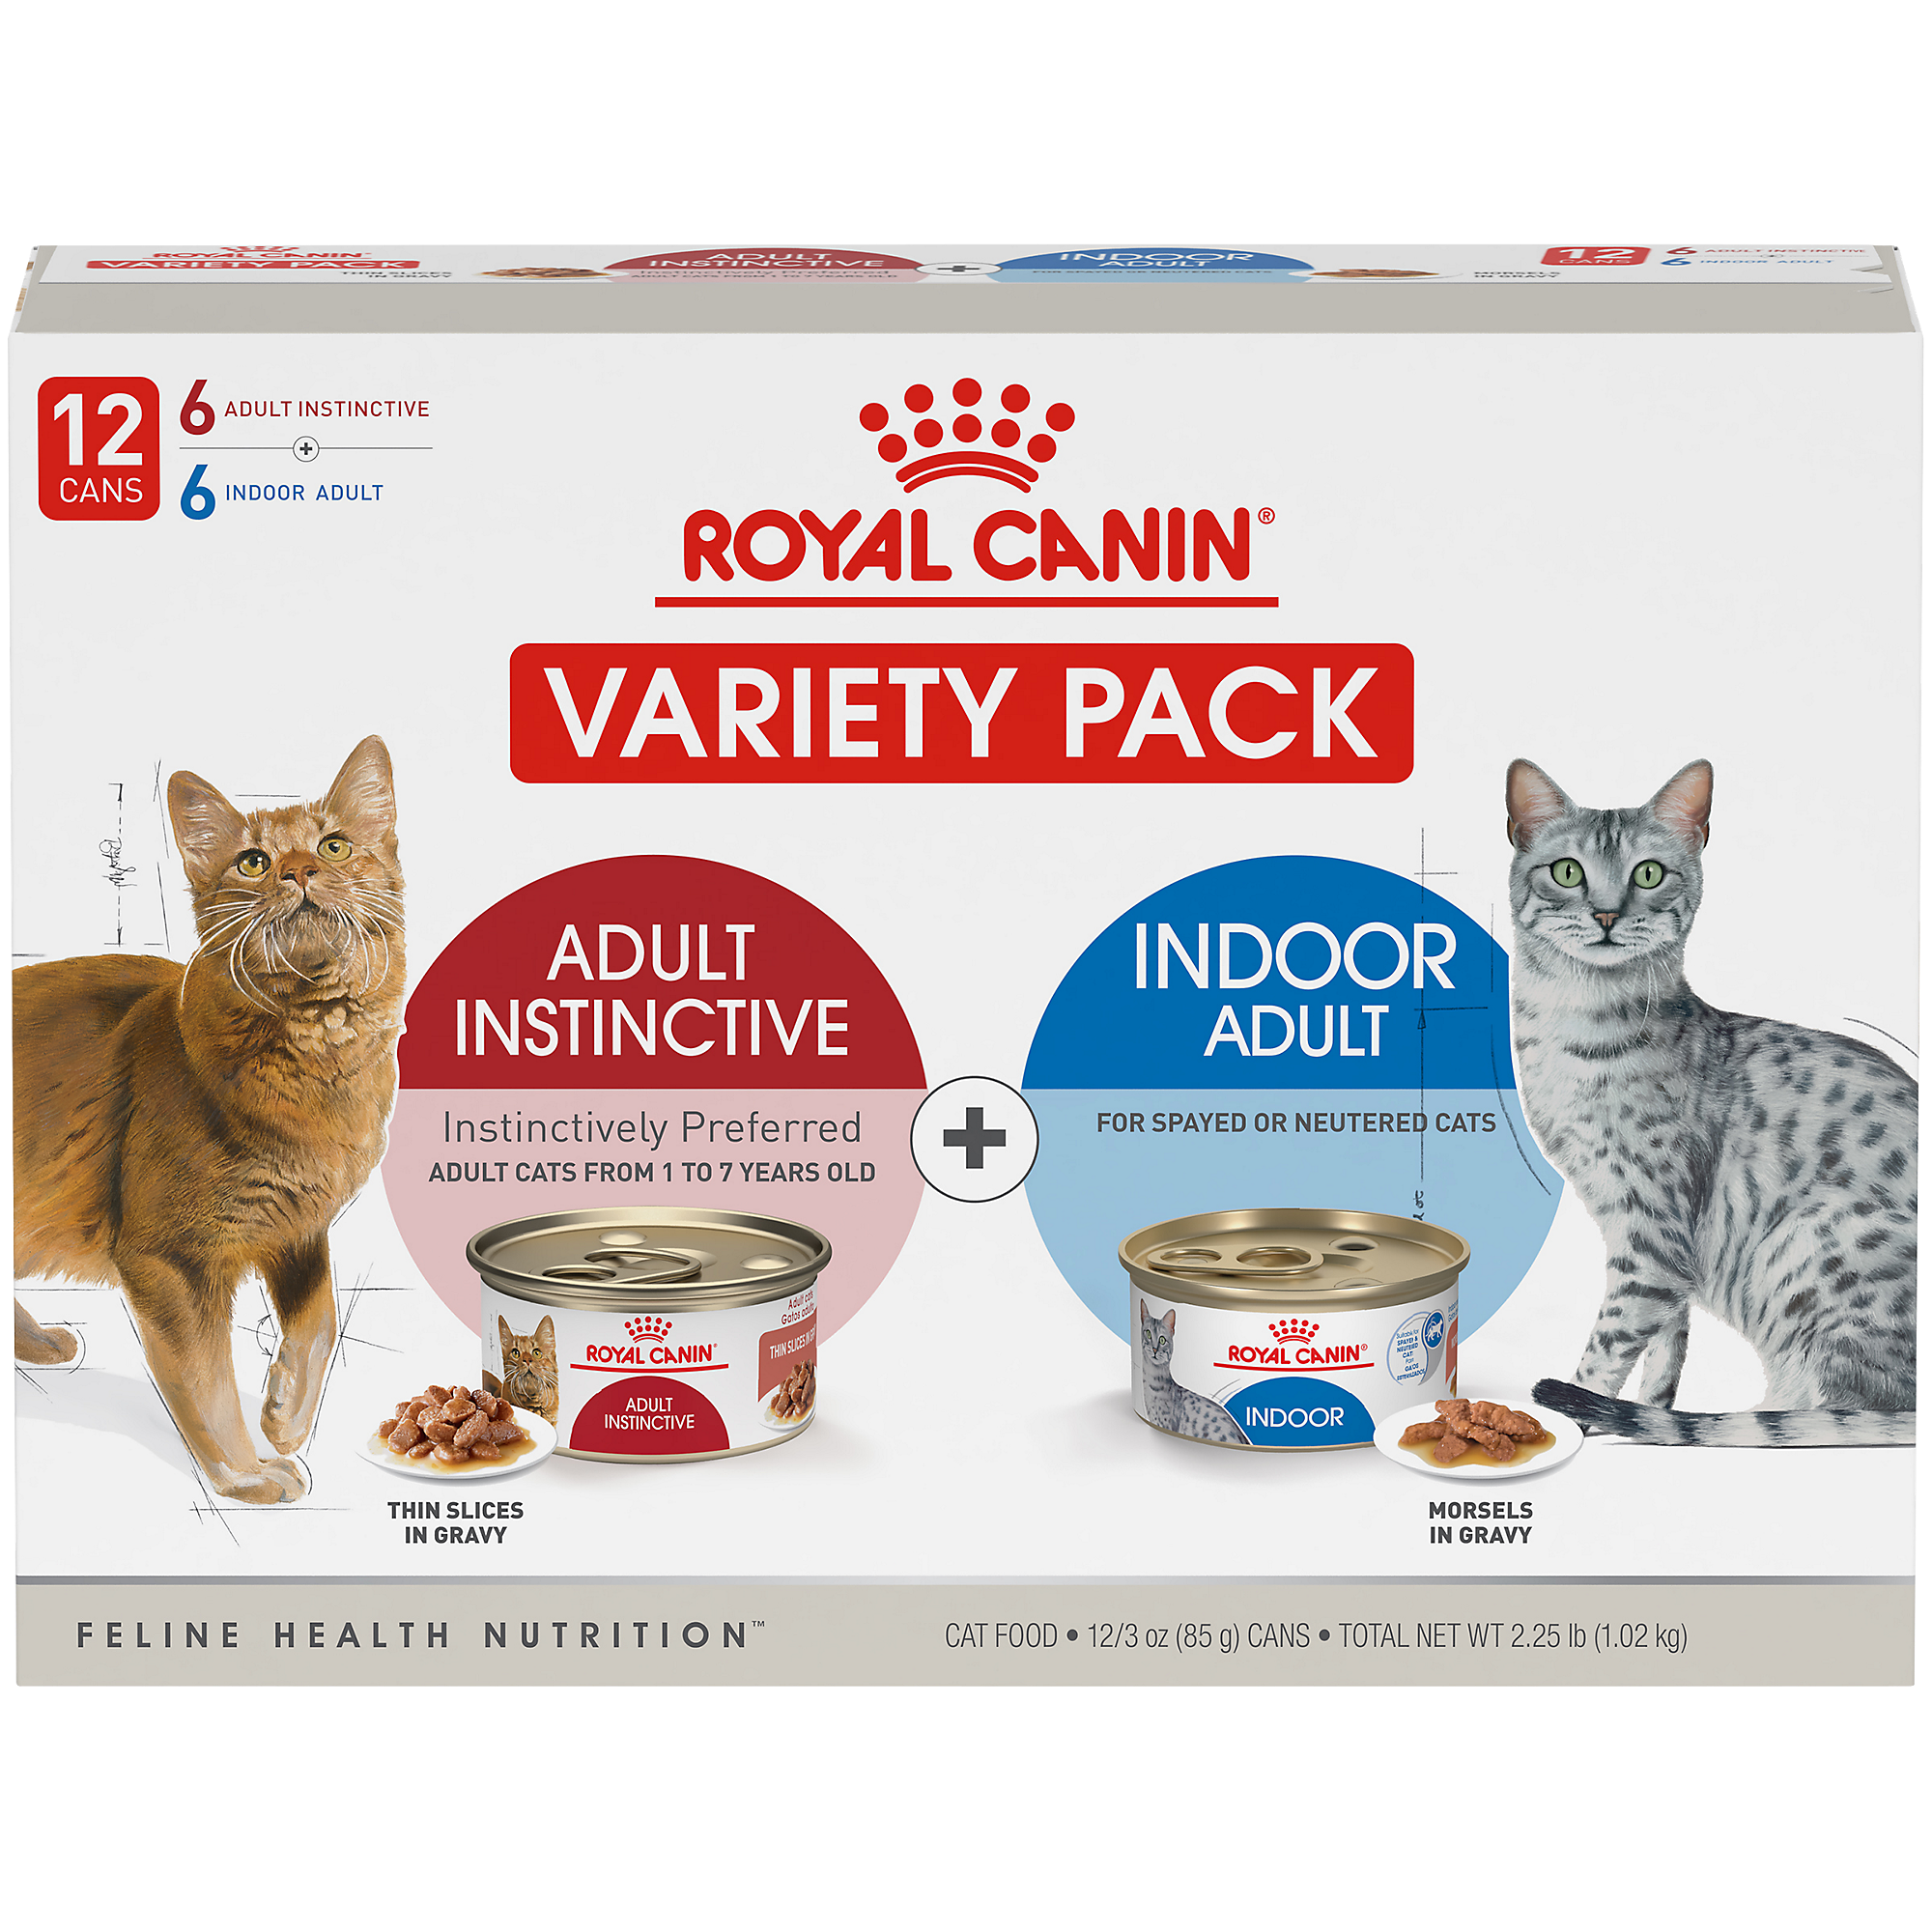 Royal Canin Feline Health Nutrition Indoor Adult & Adult Instinctive Wet Cat Food Variety Pack, 3 oz, 12 Pack